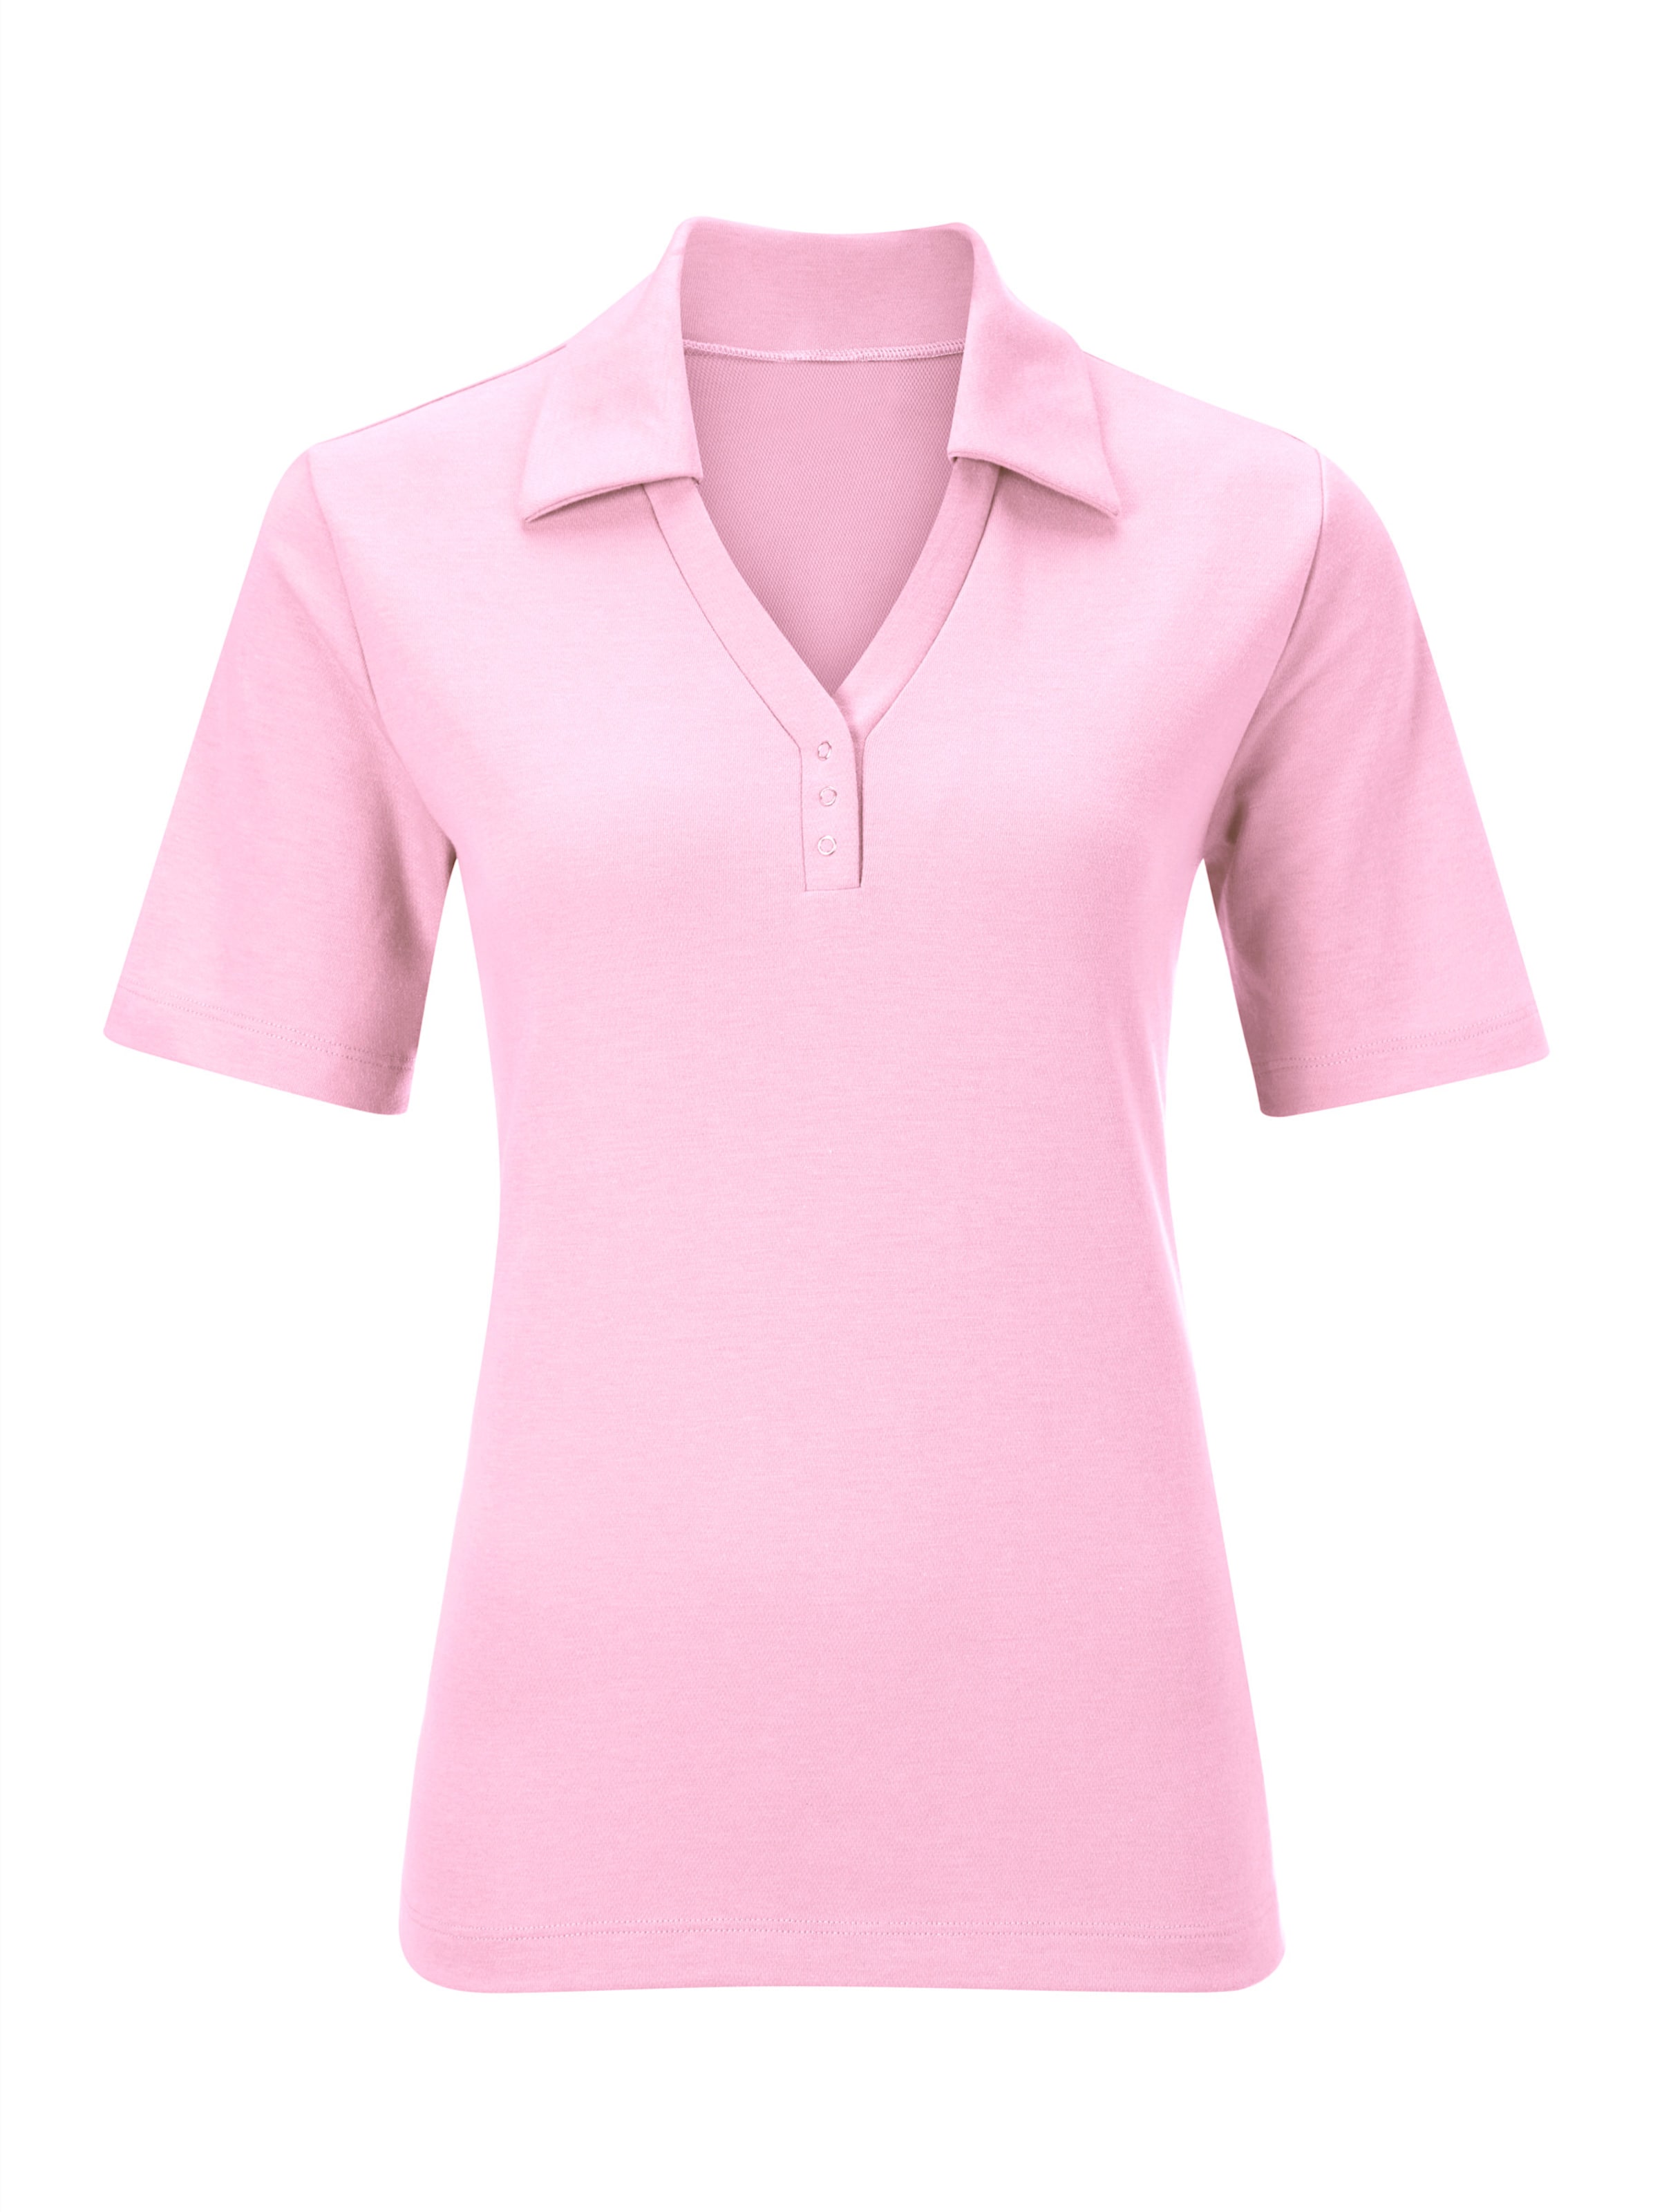 sung günstig Kaufen-Poloshirt in rosé von heine. Poloshirt in rosé von heine <![CDATA[Shirt mit offener Kragenlösung. Kleine Knopfleiste mit Druckknöpfen. Seitenschlitze. Spezielle Stay Cool & Dry-Ausrüstung.]]>. 